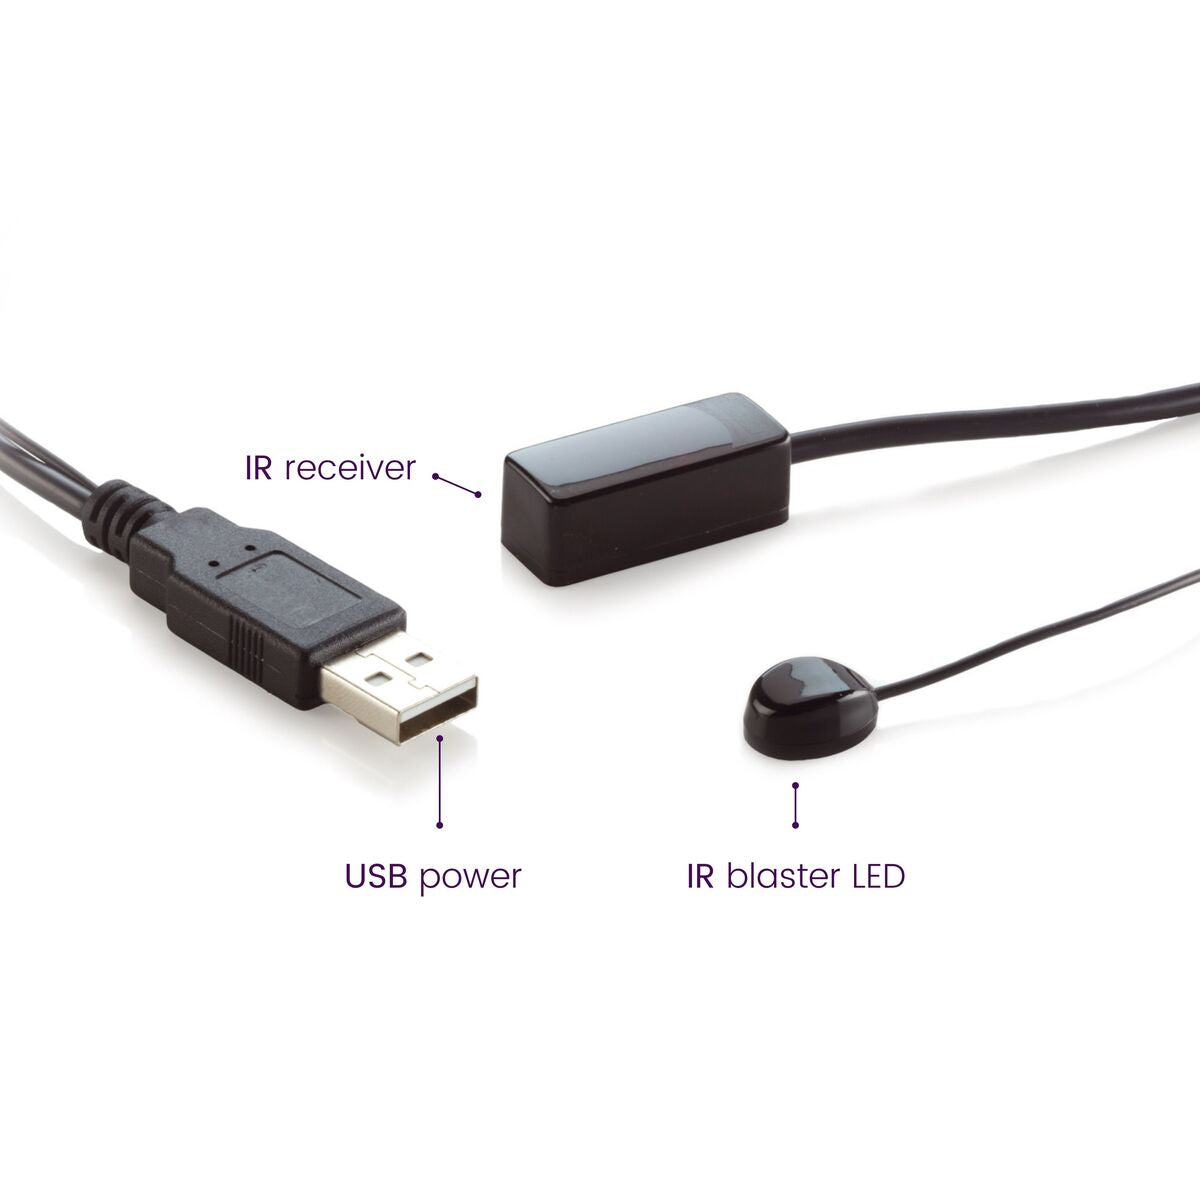 IR 100 USB - IR extender - USB powered - 1 appl.